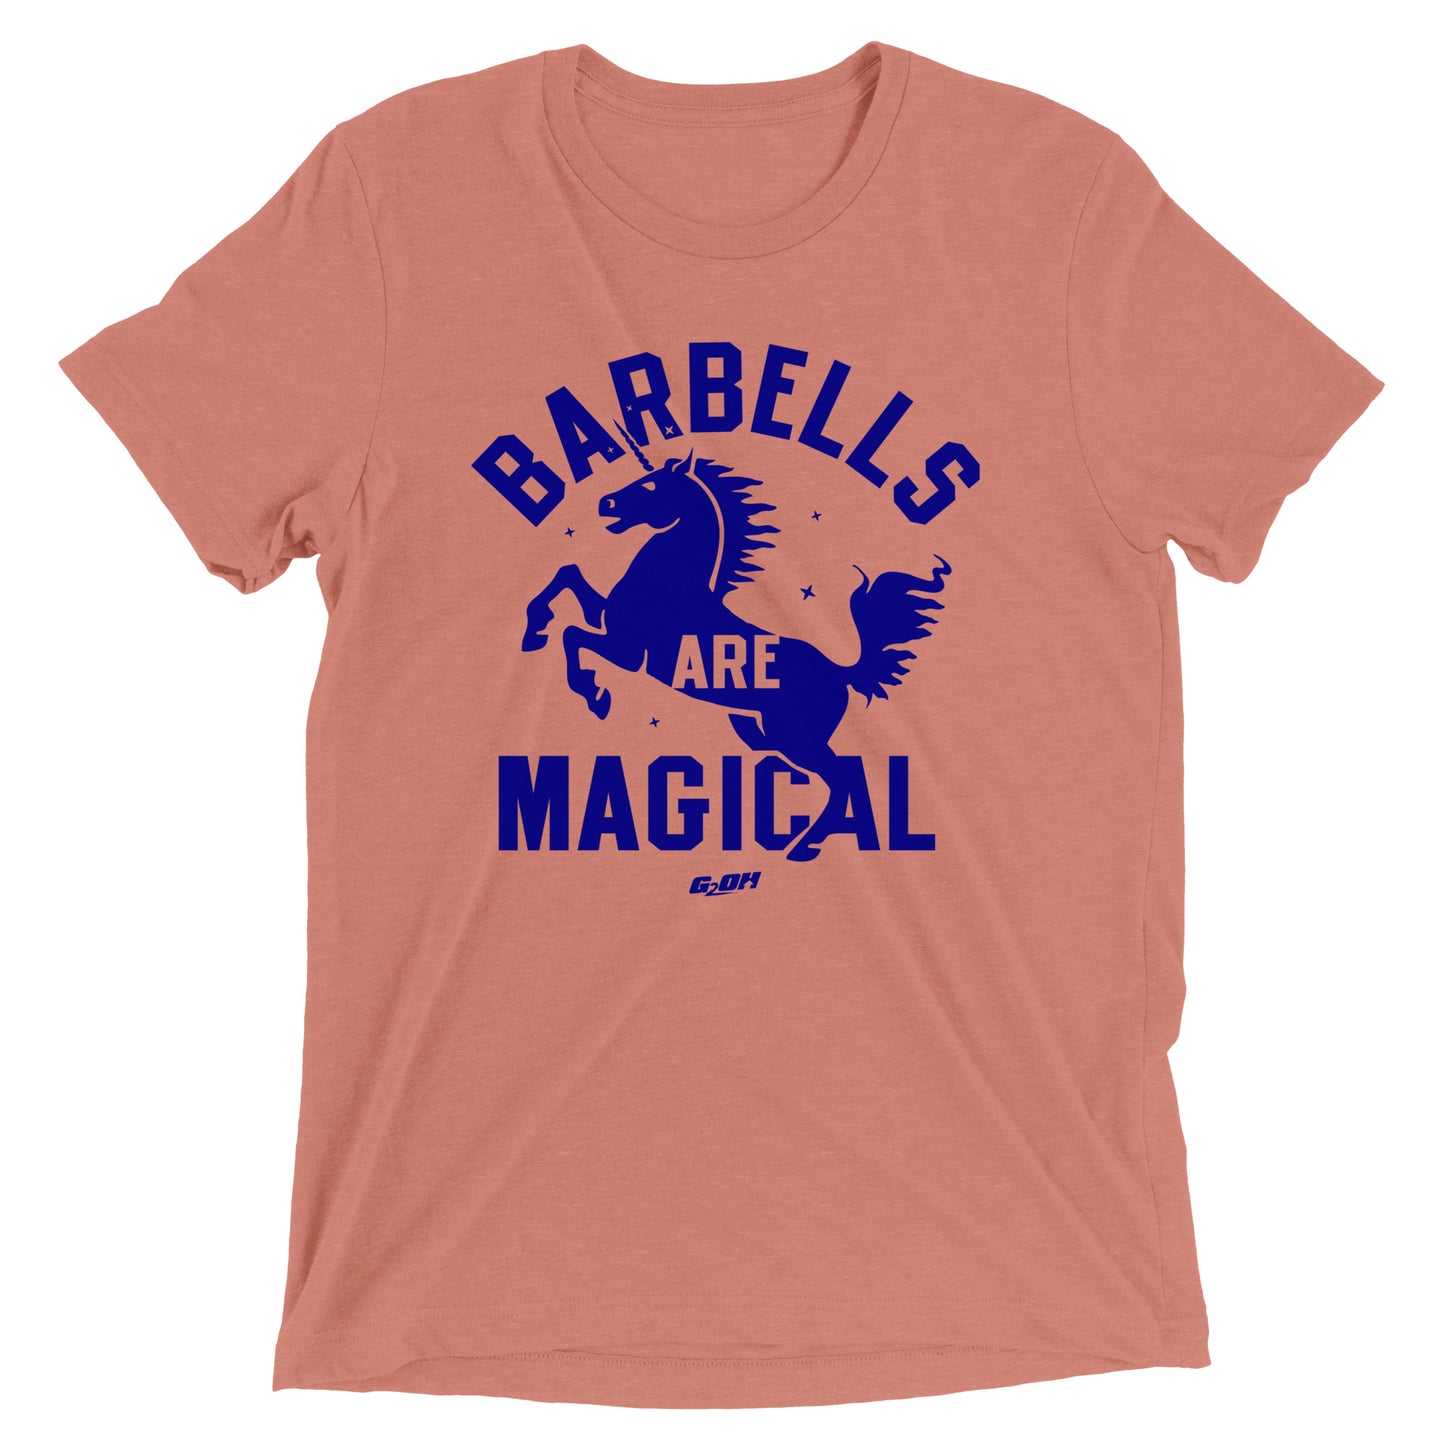 Barbells Are Magical Men's T-Shirt